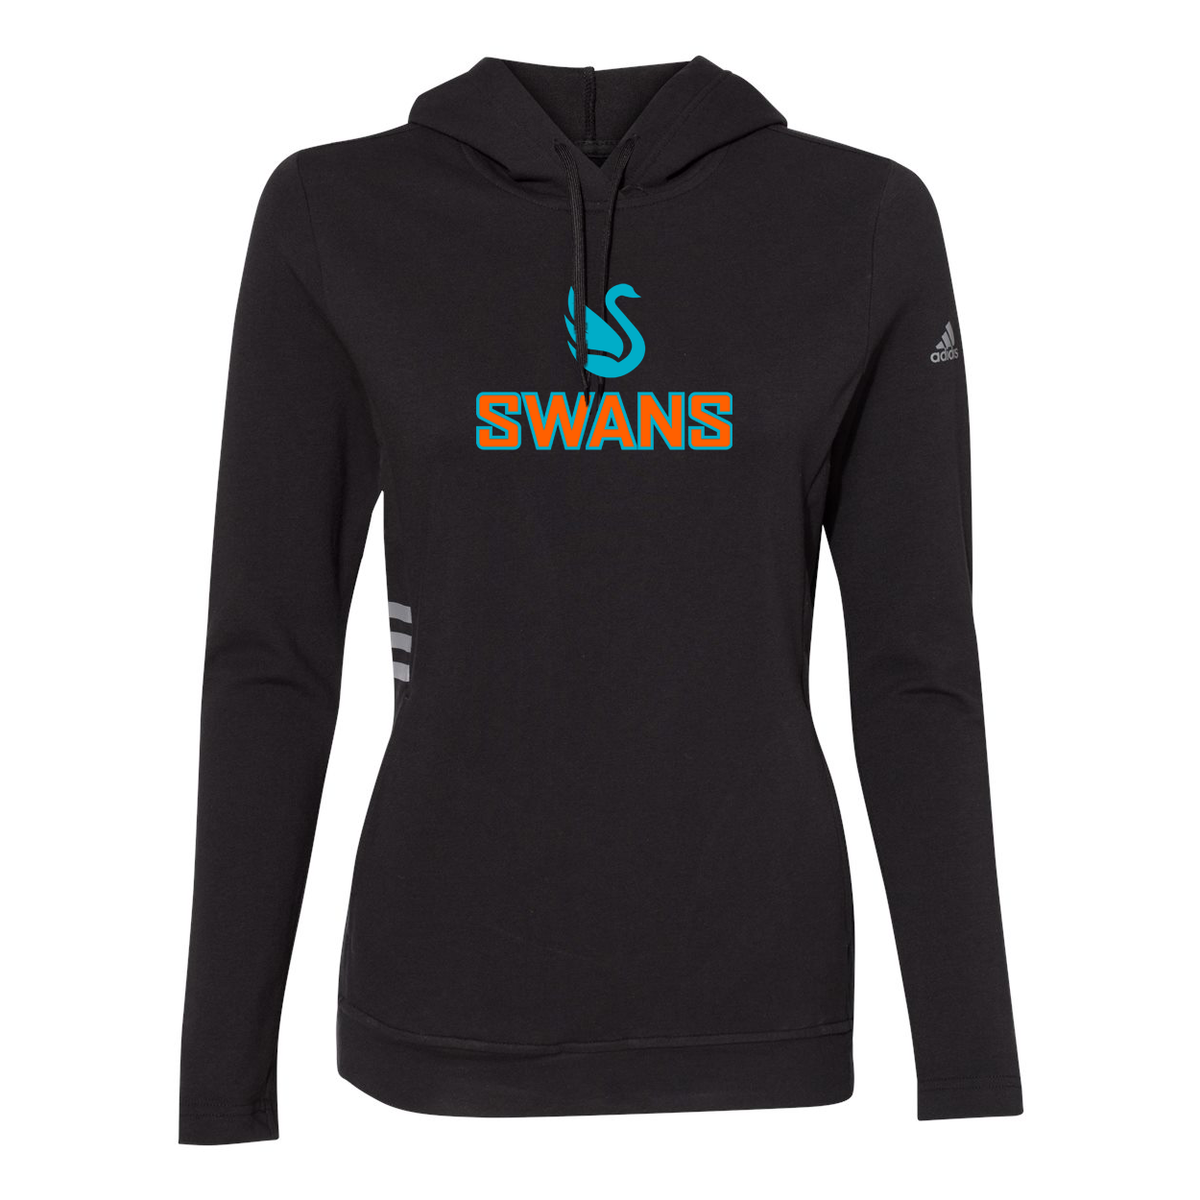 Swans Lacrosse Adidas Women's Lightweight Sweatshirt